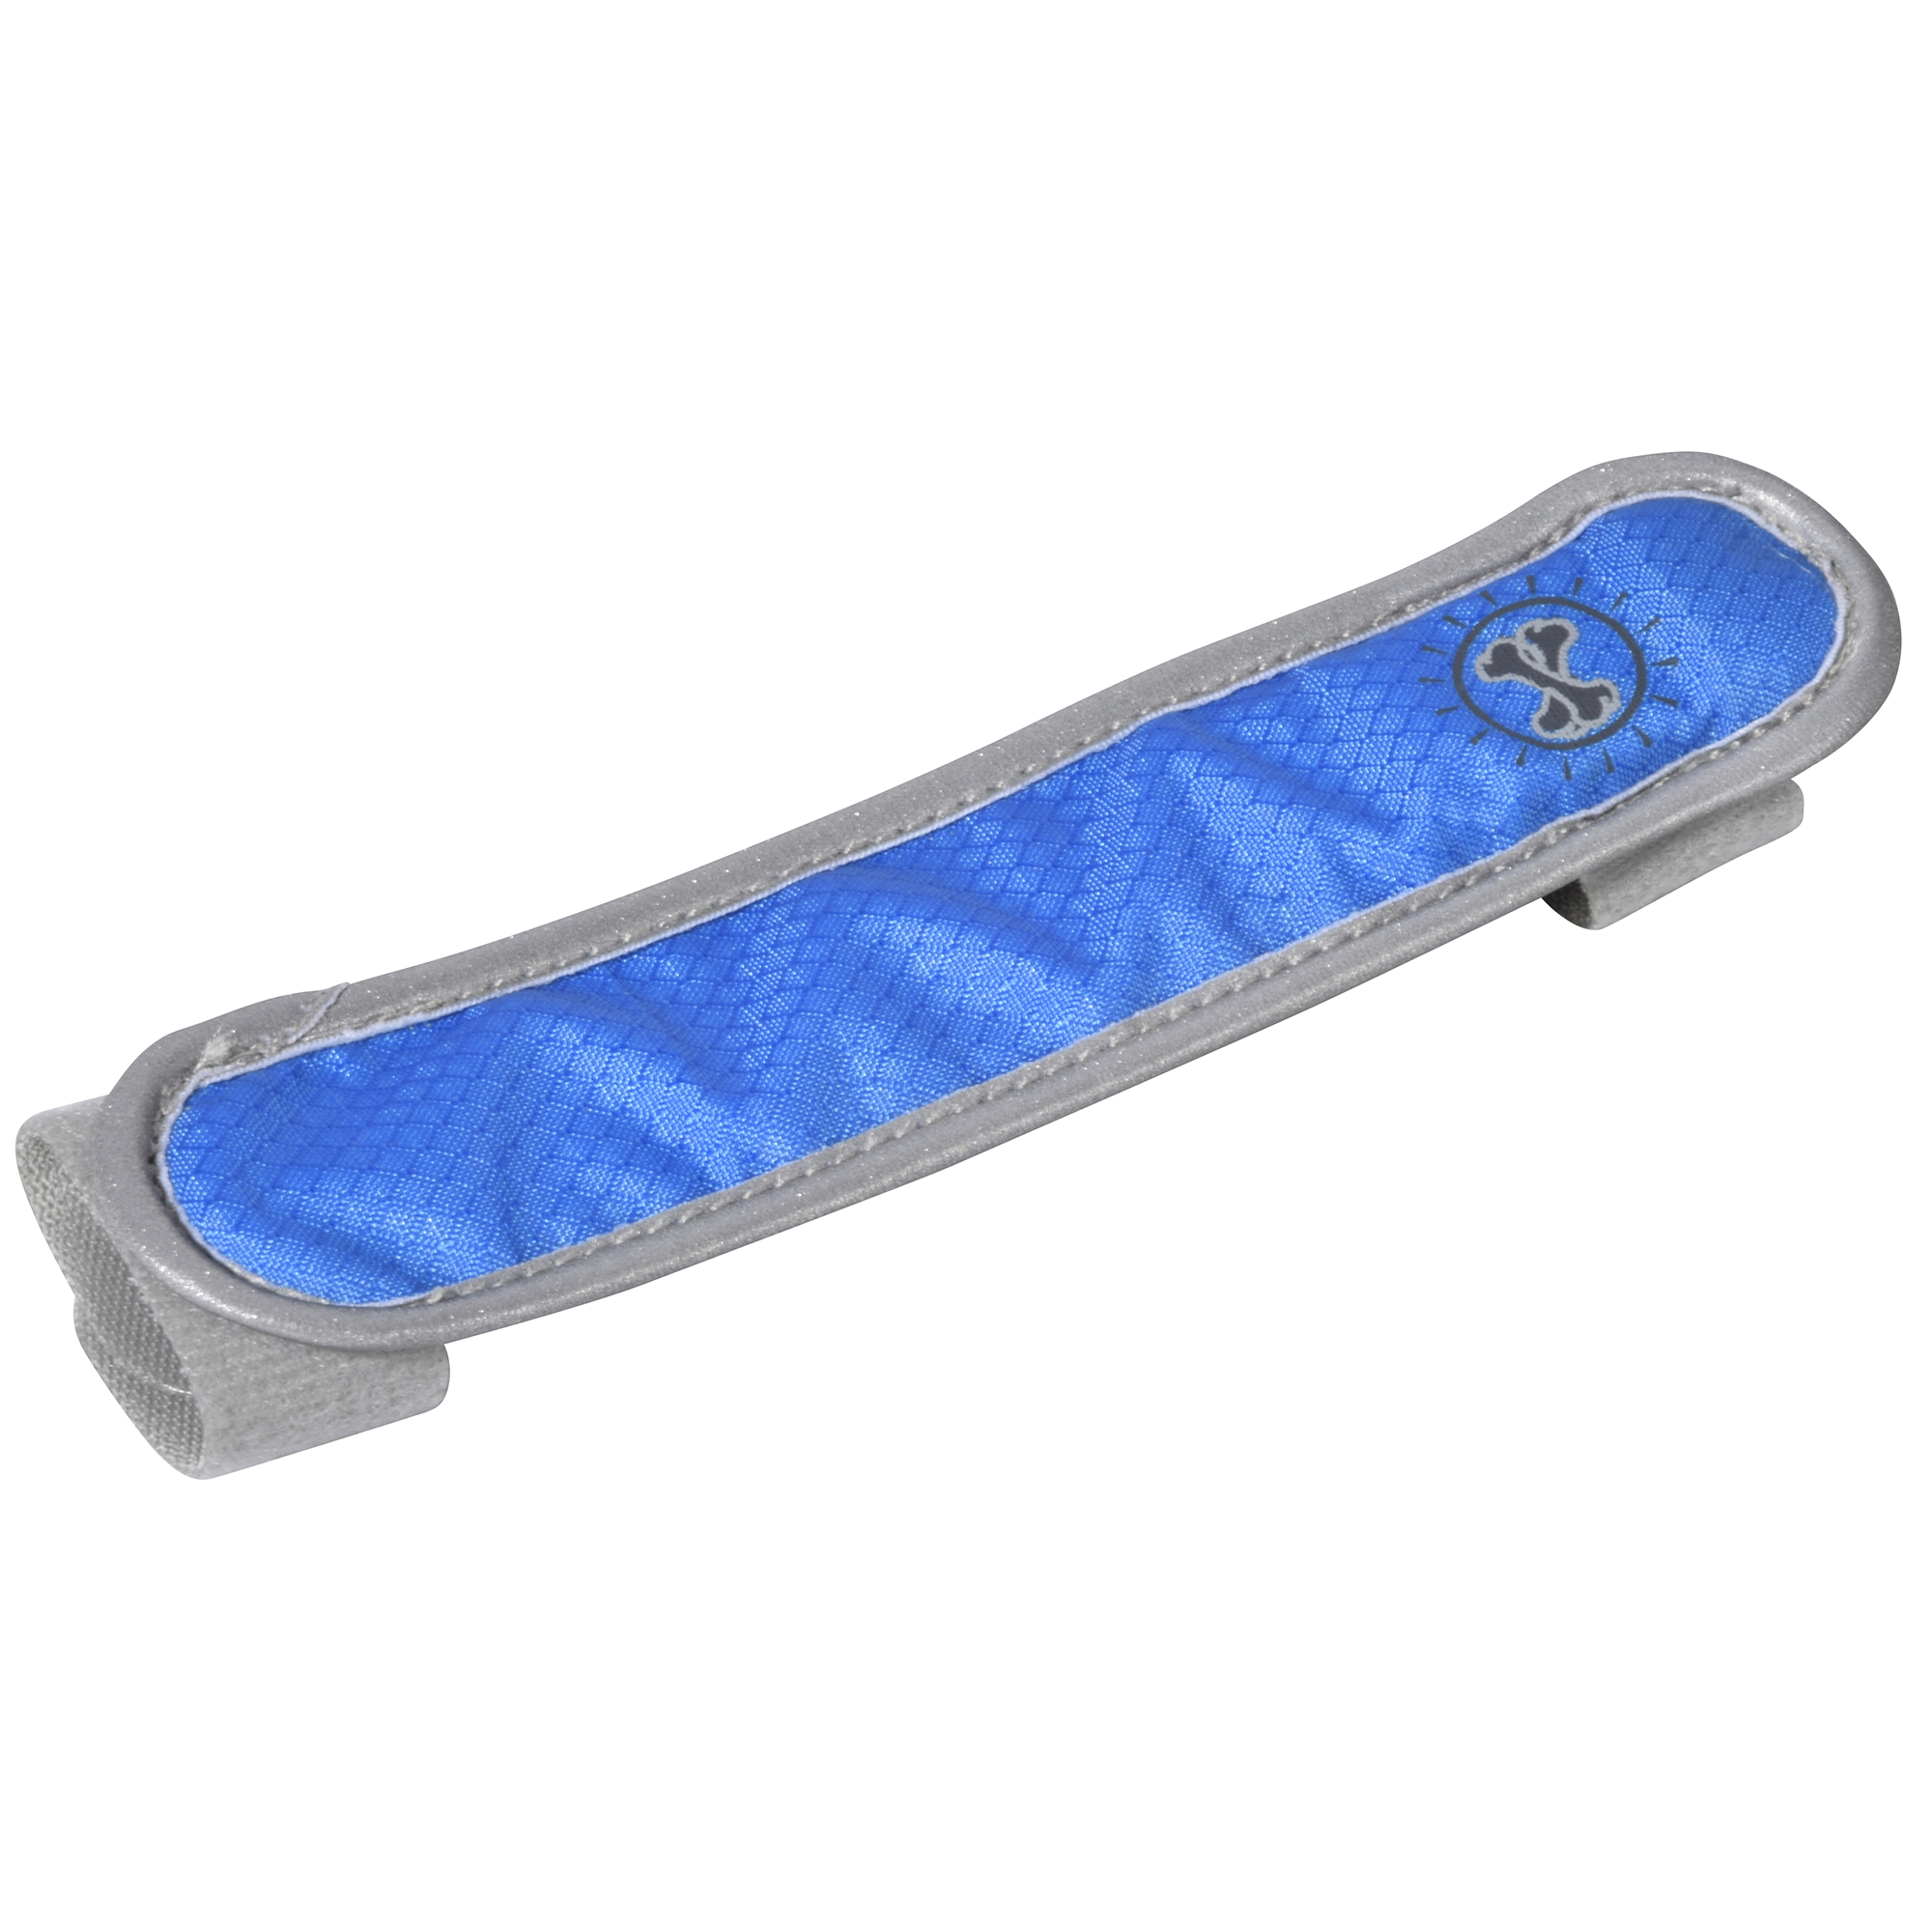 LED-Nylonband blau 15,5 cm + product picture